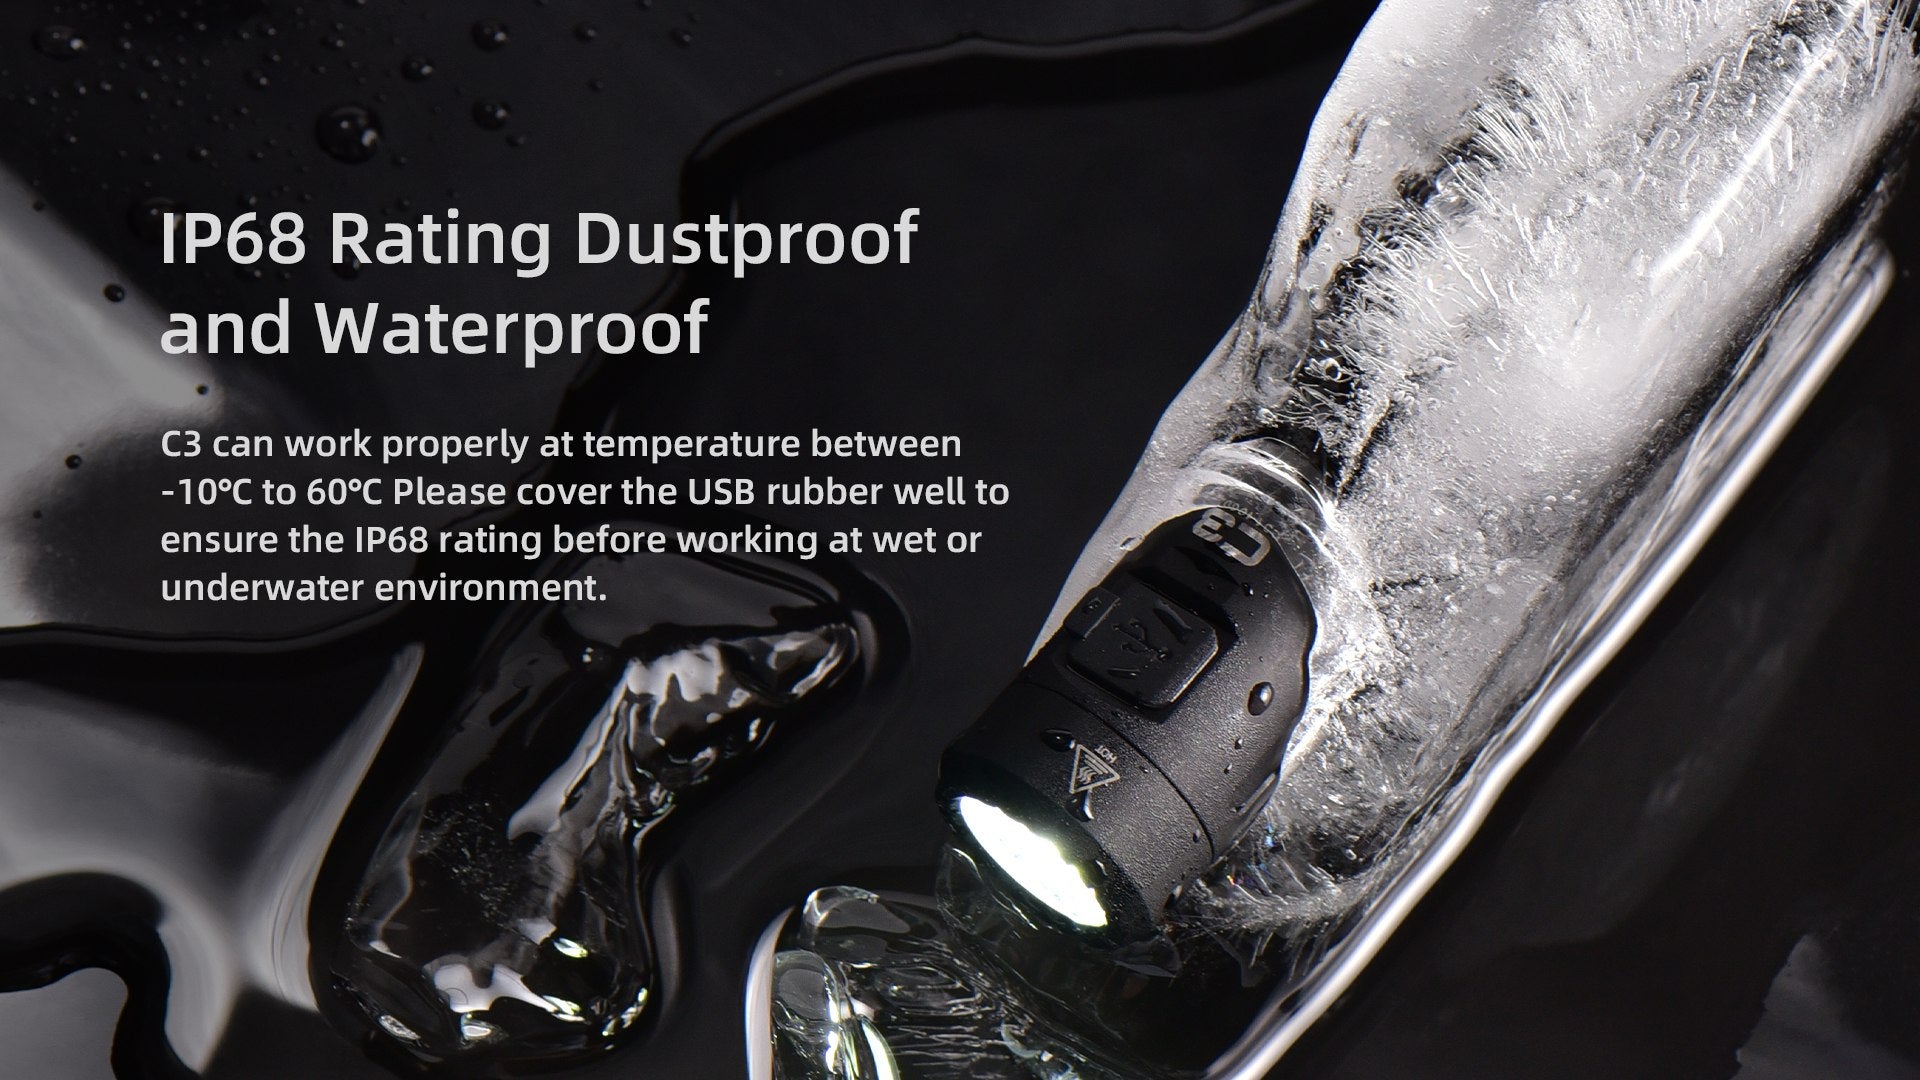 IP68 Dustproof and Waterproof